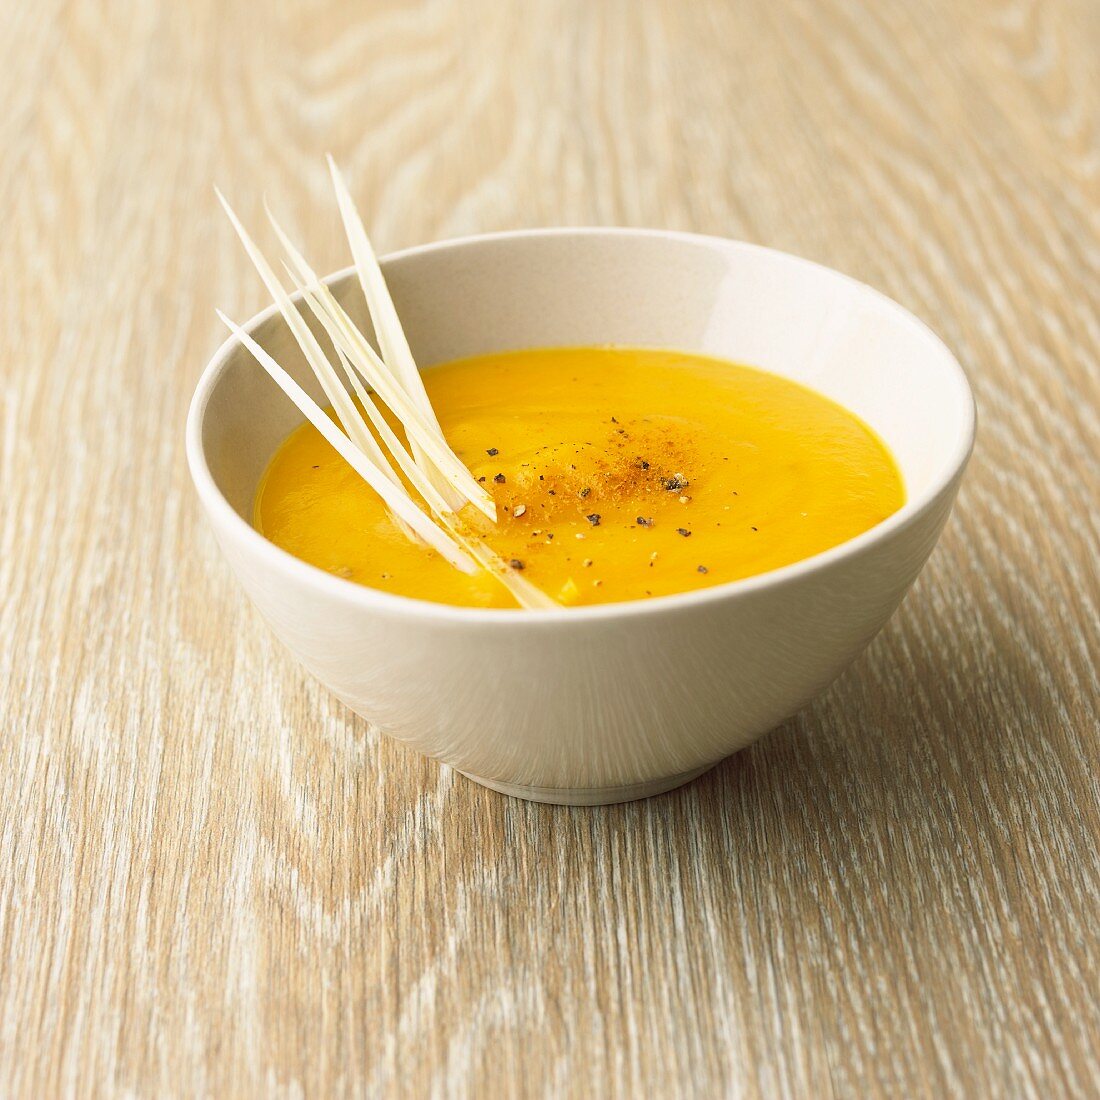 Pumpkin and lemongrass soup